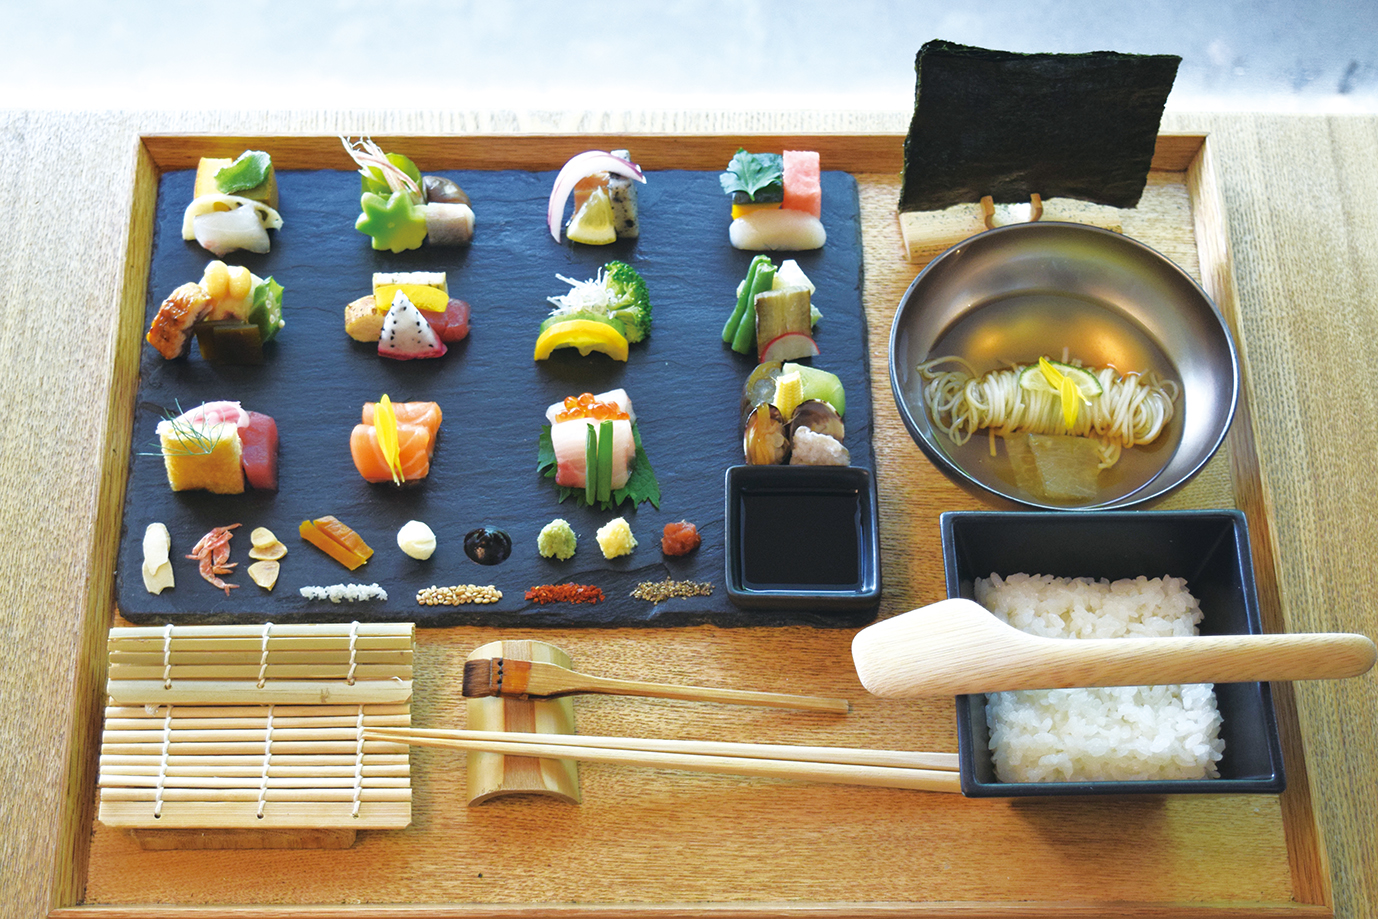 京都らしさも味わえるセルフ手巻き寿司店 外国人観光客にも好評 日本食糧新聞電子版